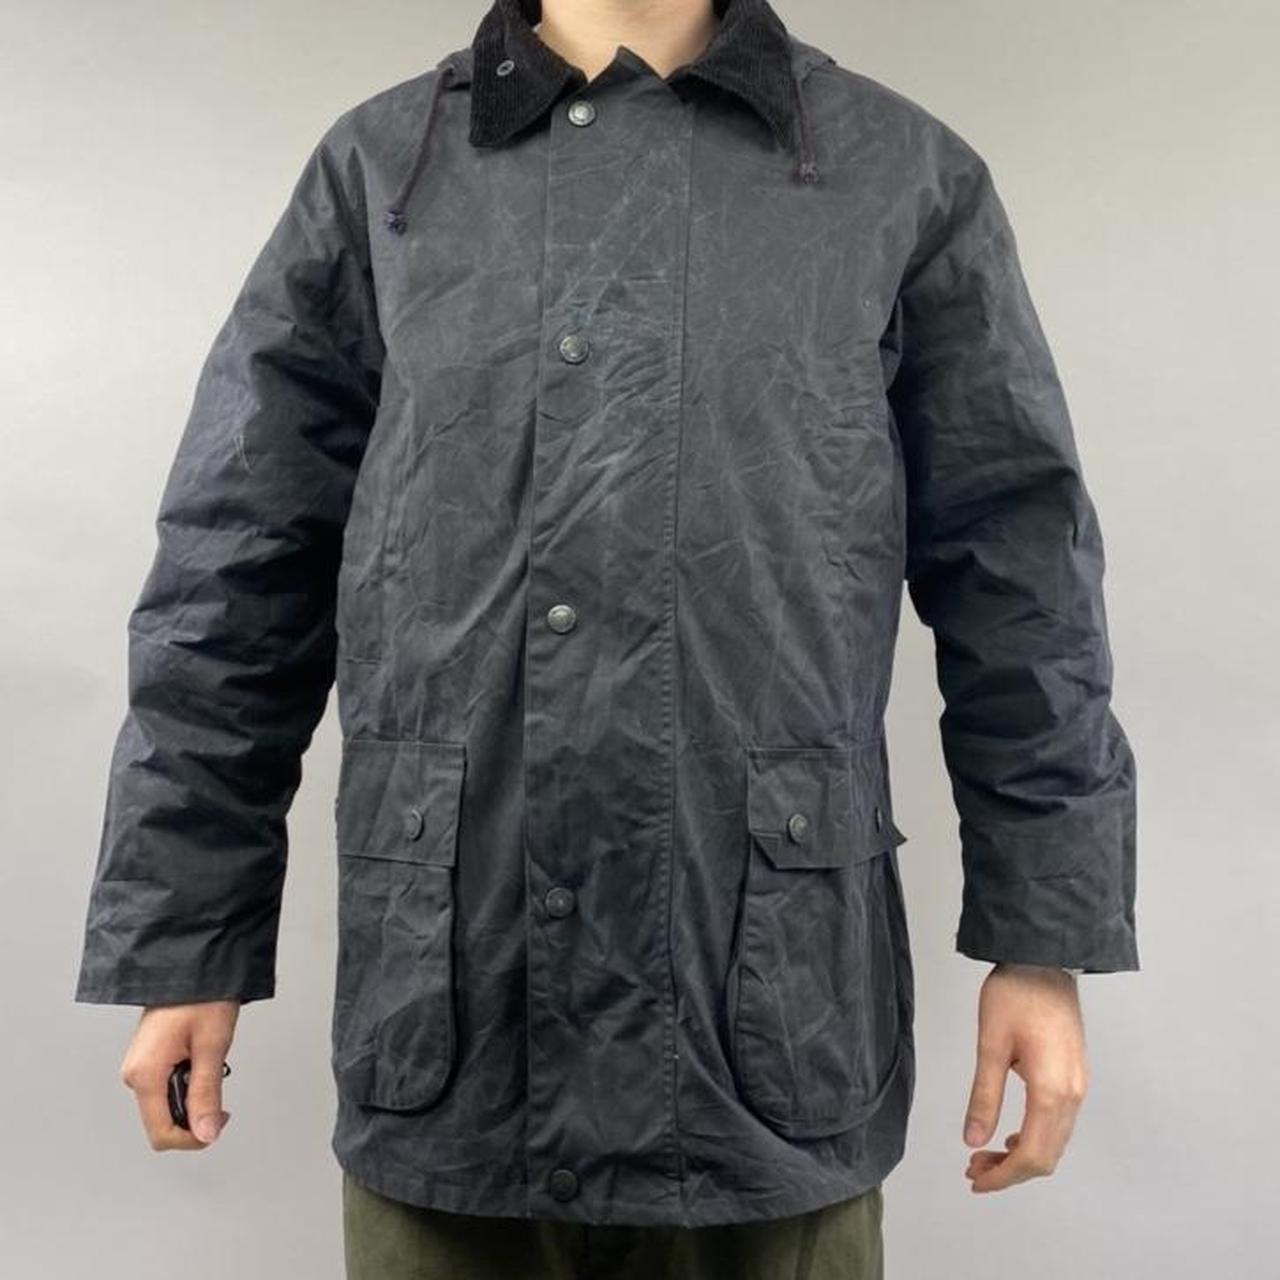 Mc orvis wachs- wtterjacke navy wax jacket Size -... - Depop